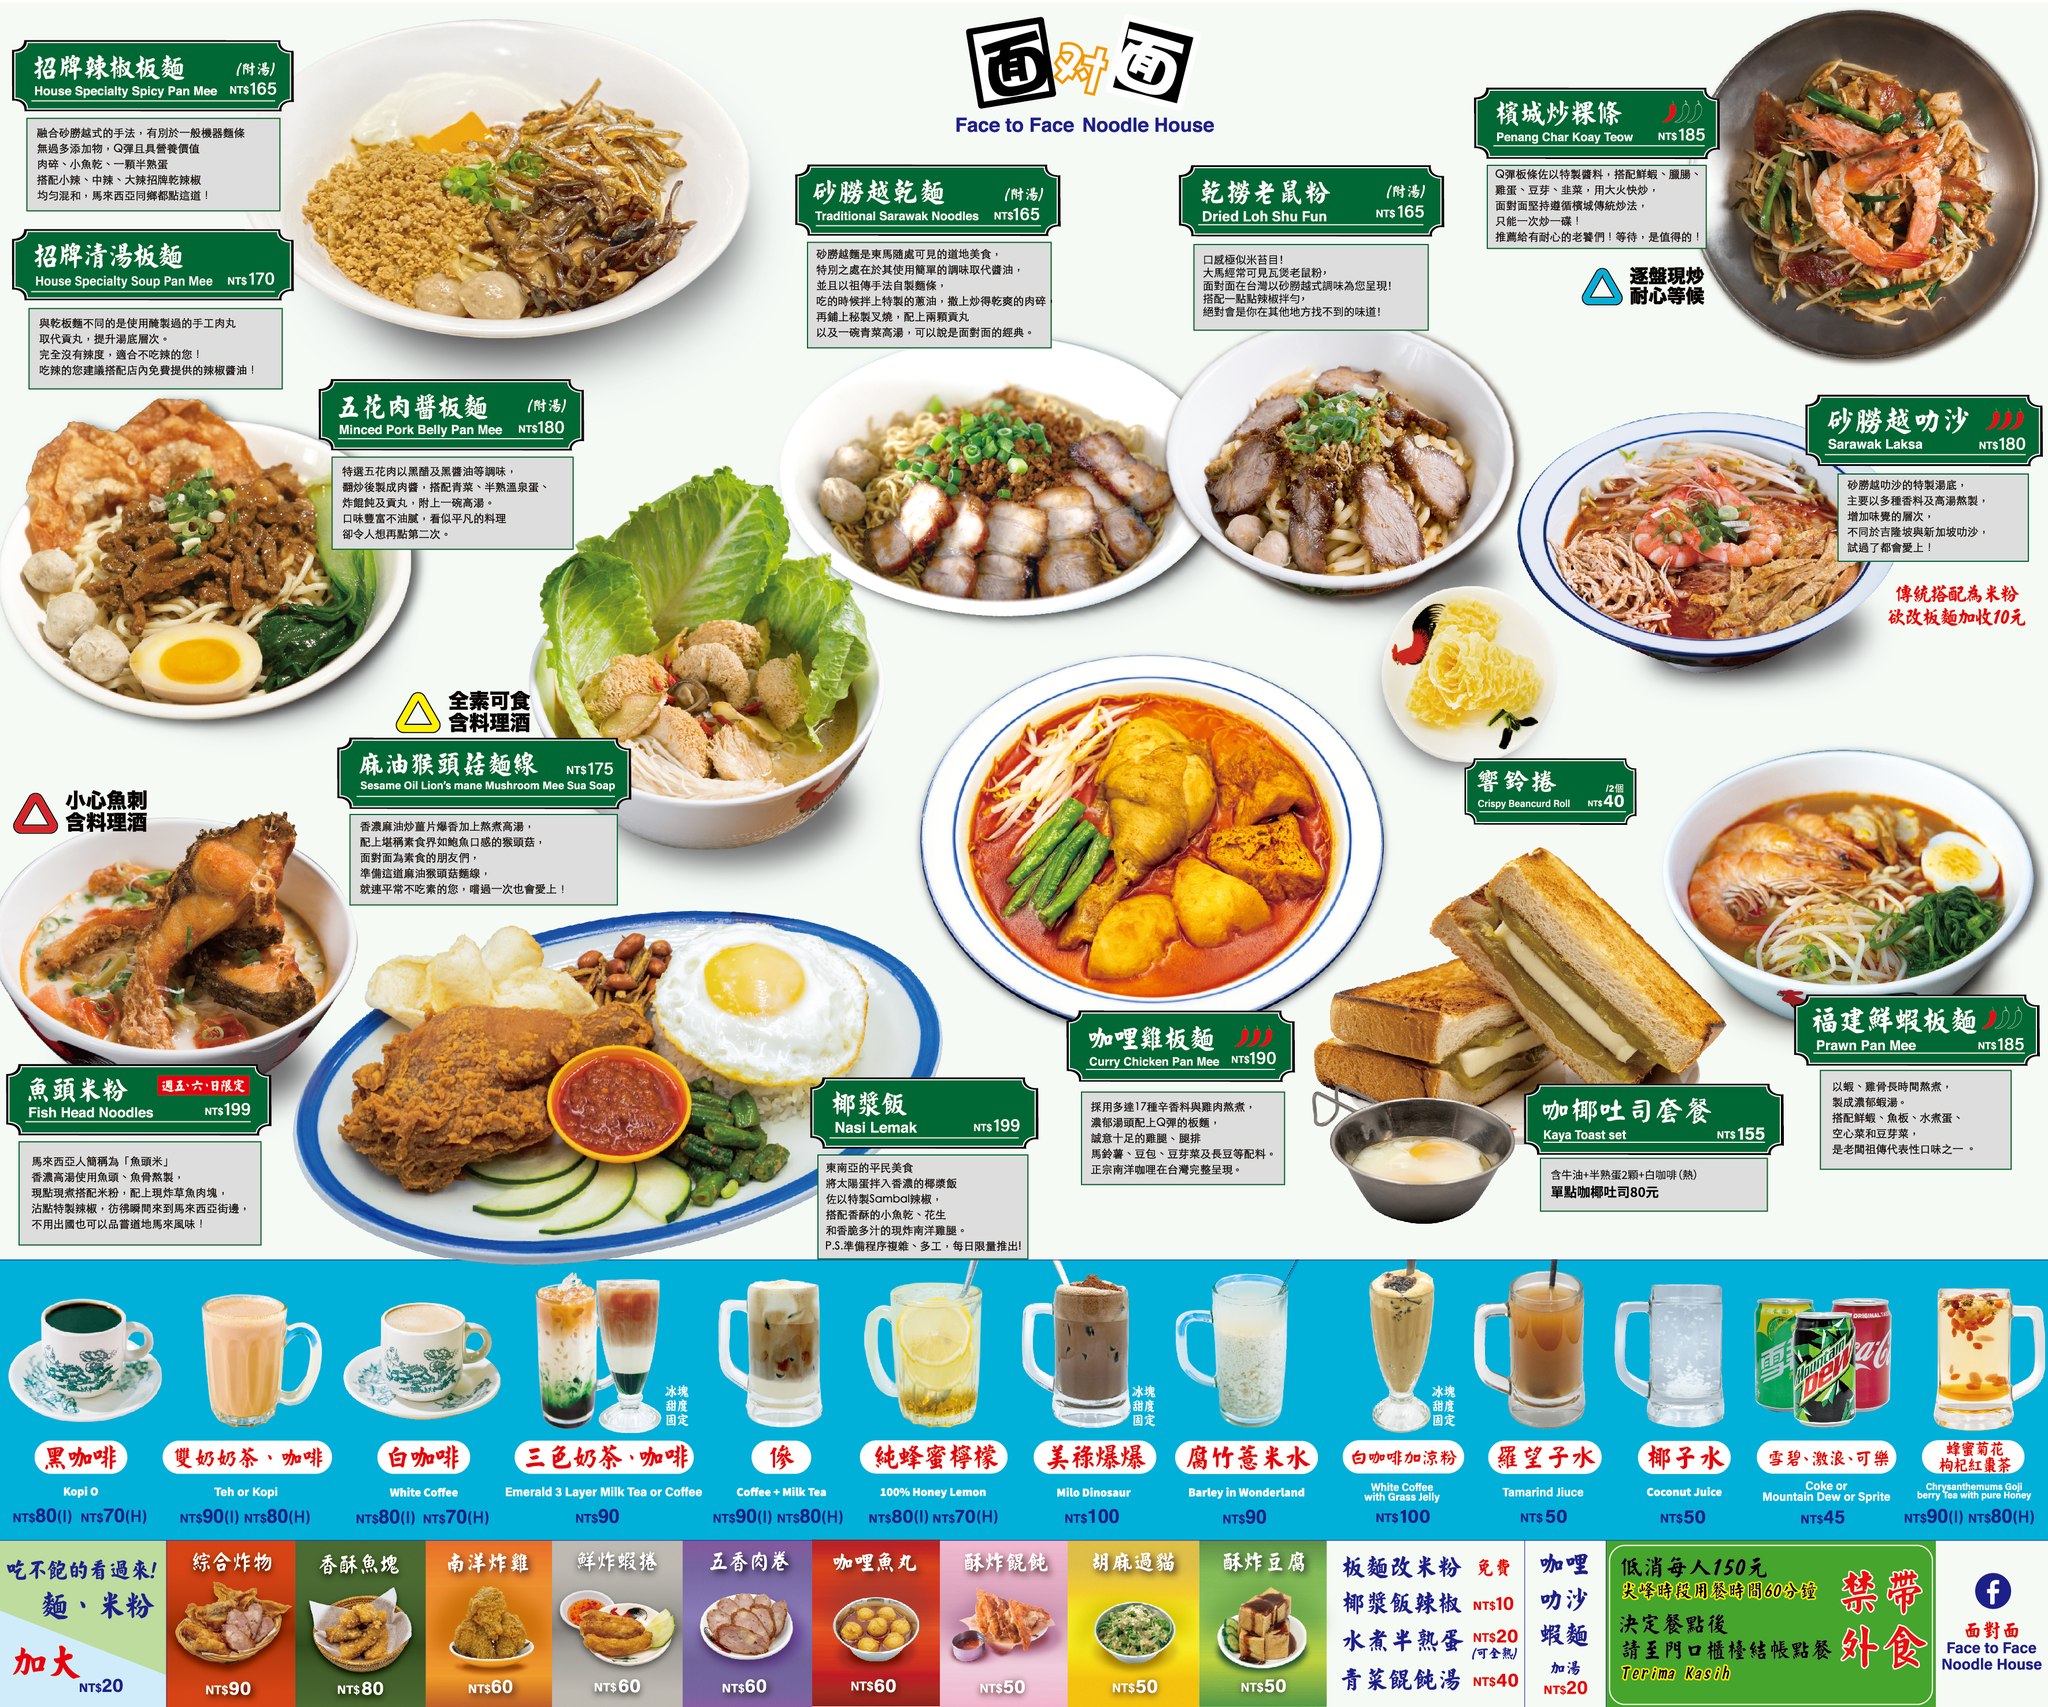 馬來西亞料理台北,面對面菜單,面對面外帶,面對面馬來西亞菜單,面對面椰漿飯 @布雷克的出走旅行視界